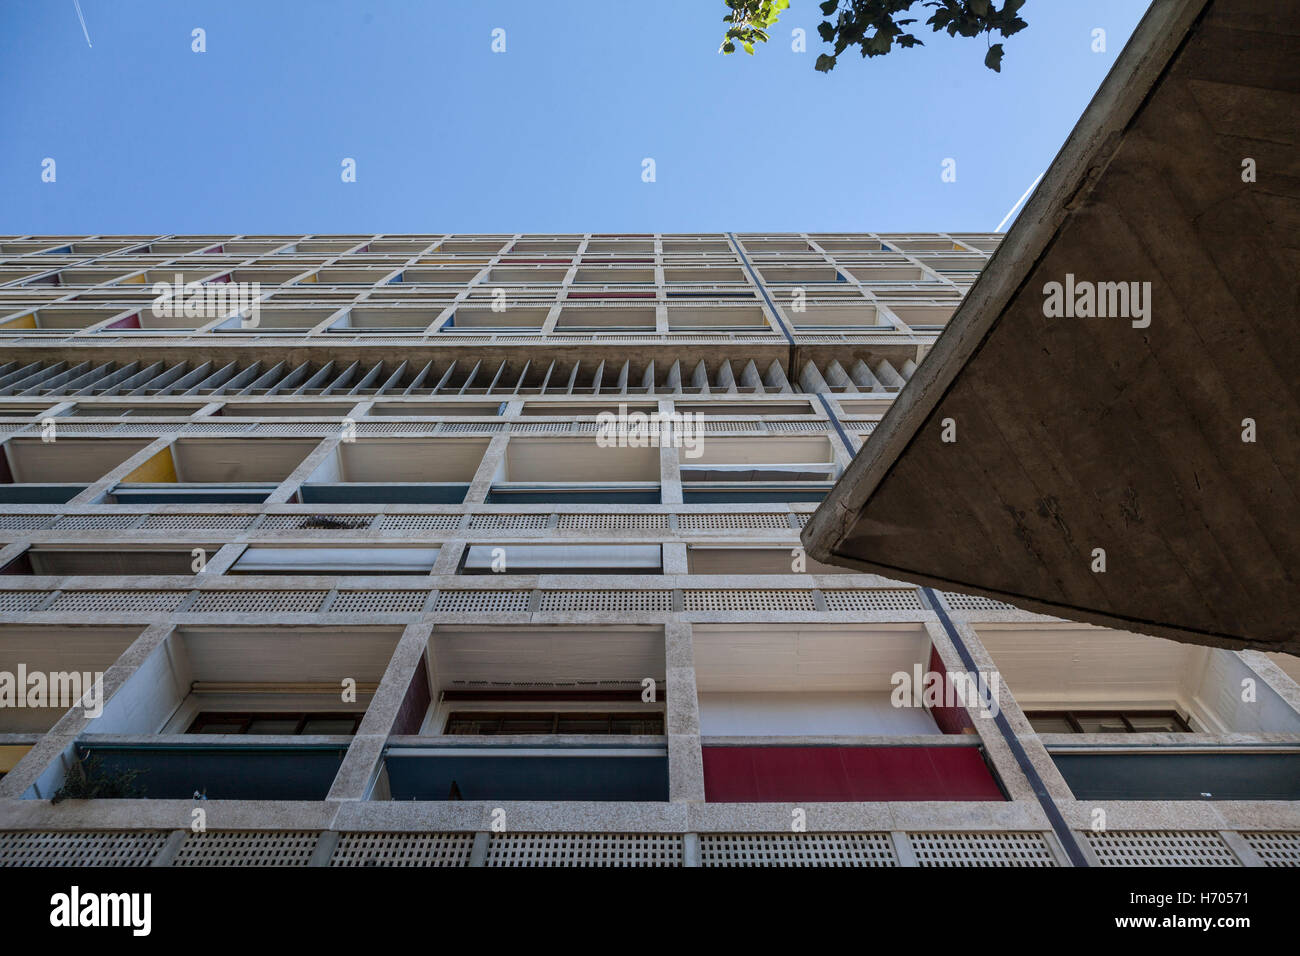 Travaux d'art à l'Unite d'habitation, Marseille, France, Architecte : Le Corbusier, 1952 Banque D'Images